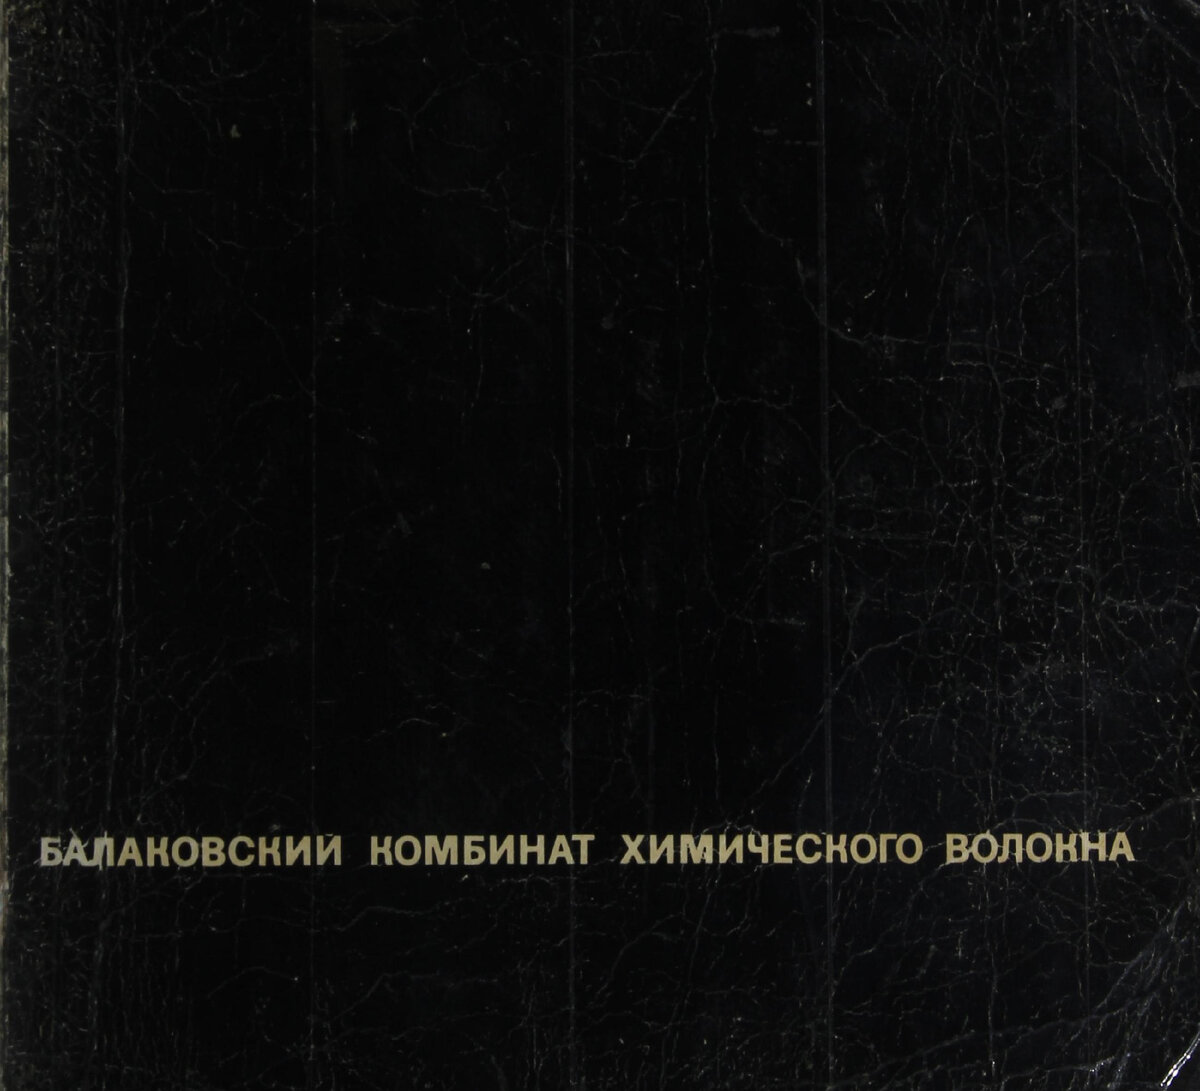 Предлагаю вашему вниманию довольно редкую книгу "Балаковский комбинат химического волокна", вышедшую в 1971 году. Книга прекрасно иллюстрирована! Ни одной фотографии из нее нет на сайте oldsaratov.